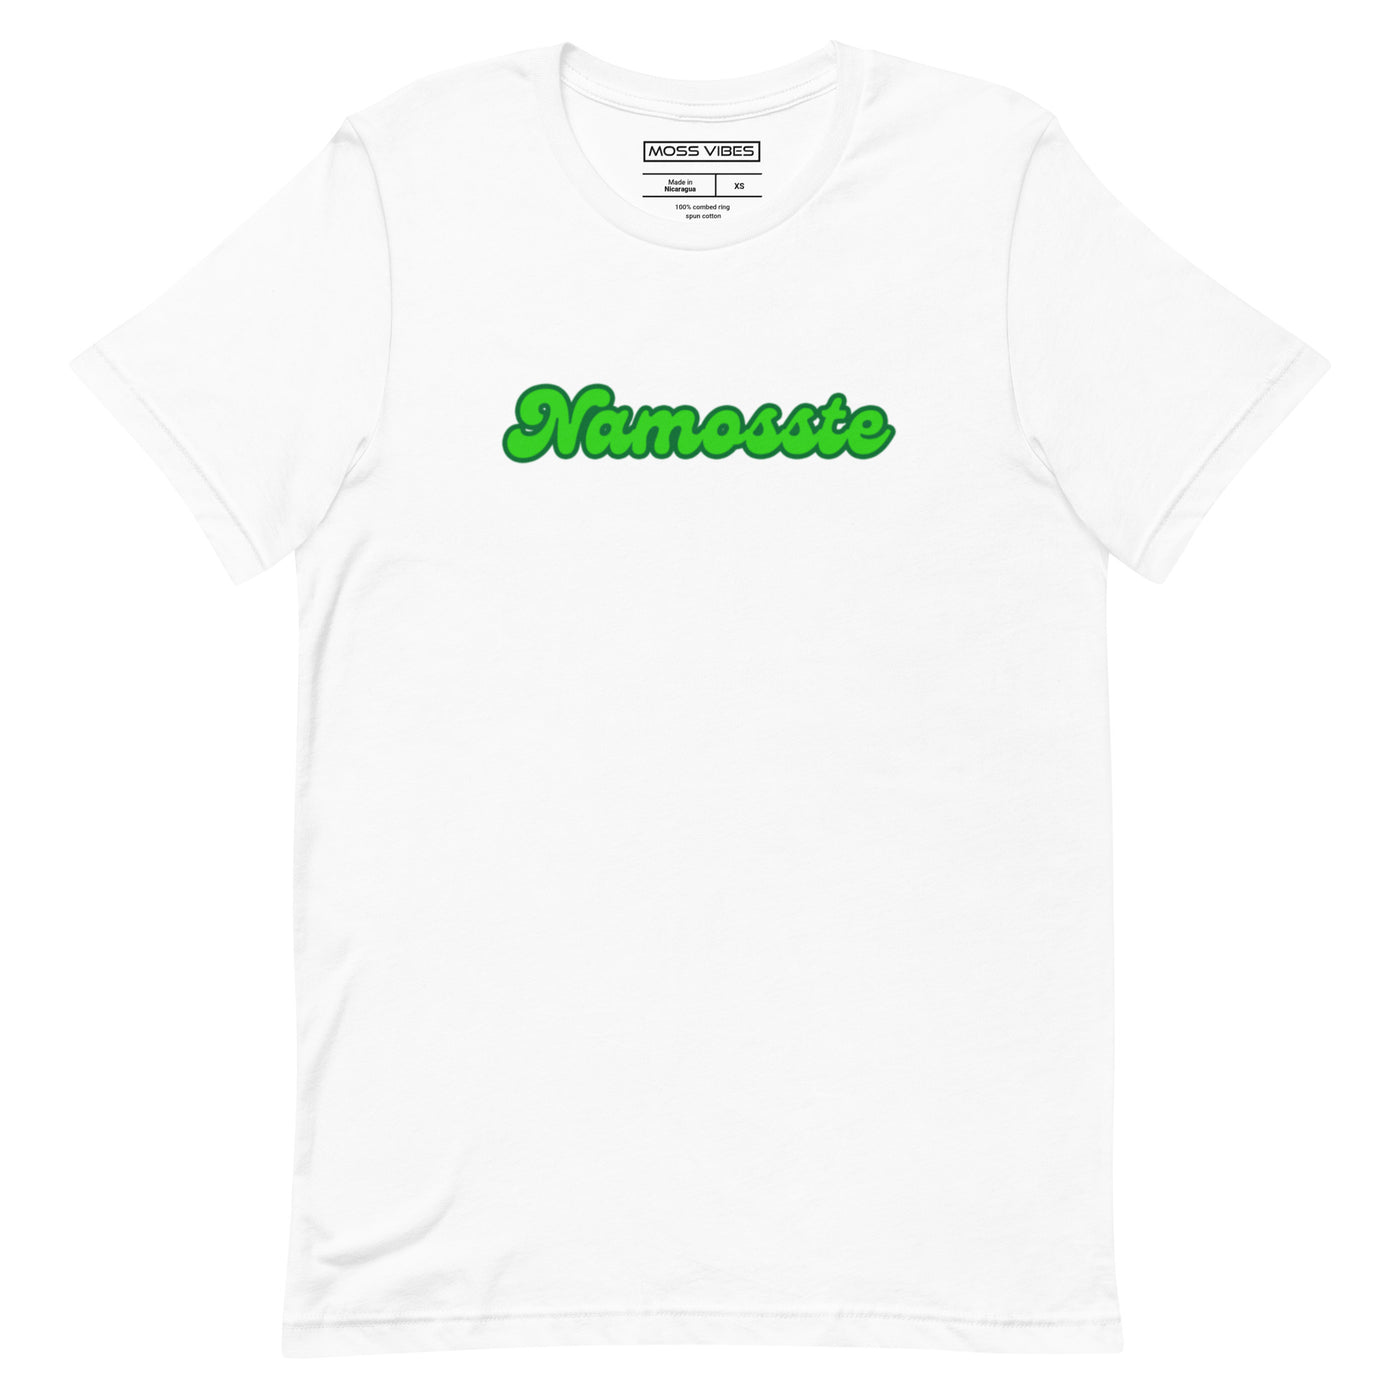 Namosste Green Logo t-shirt